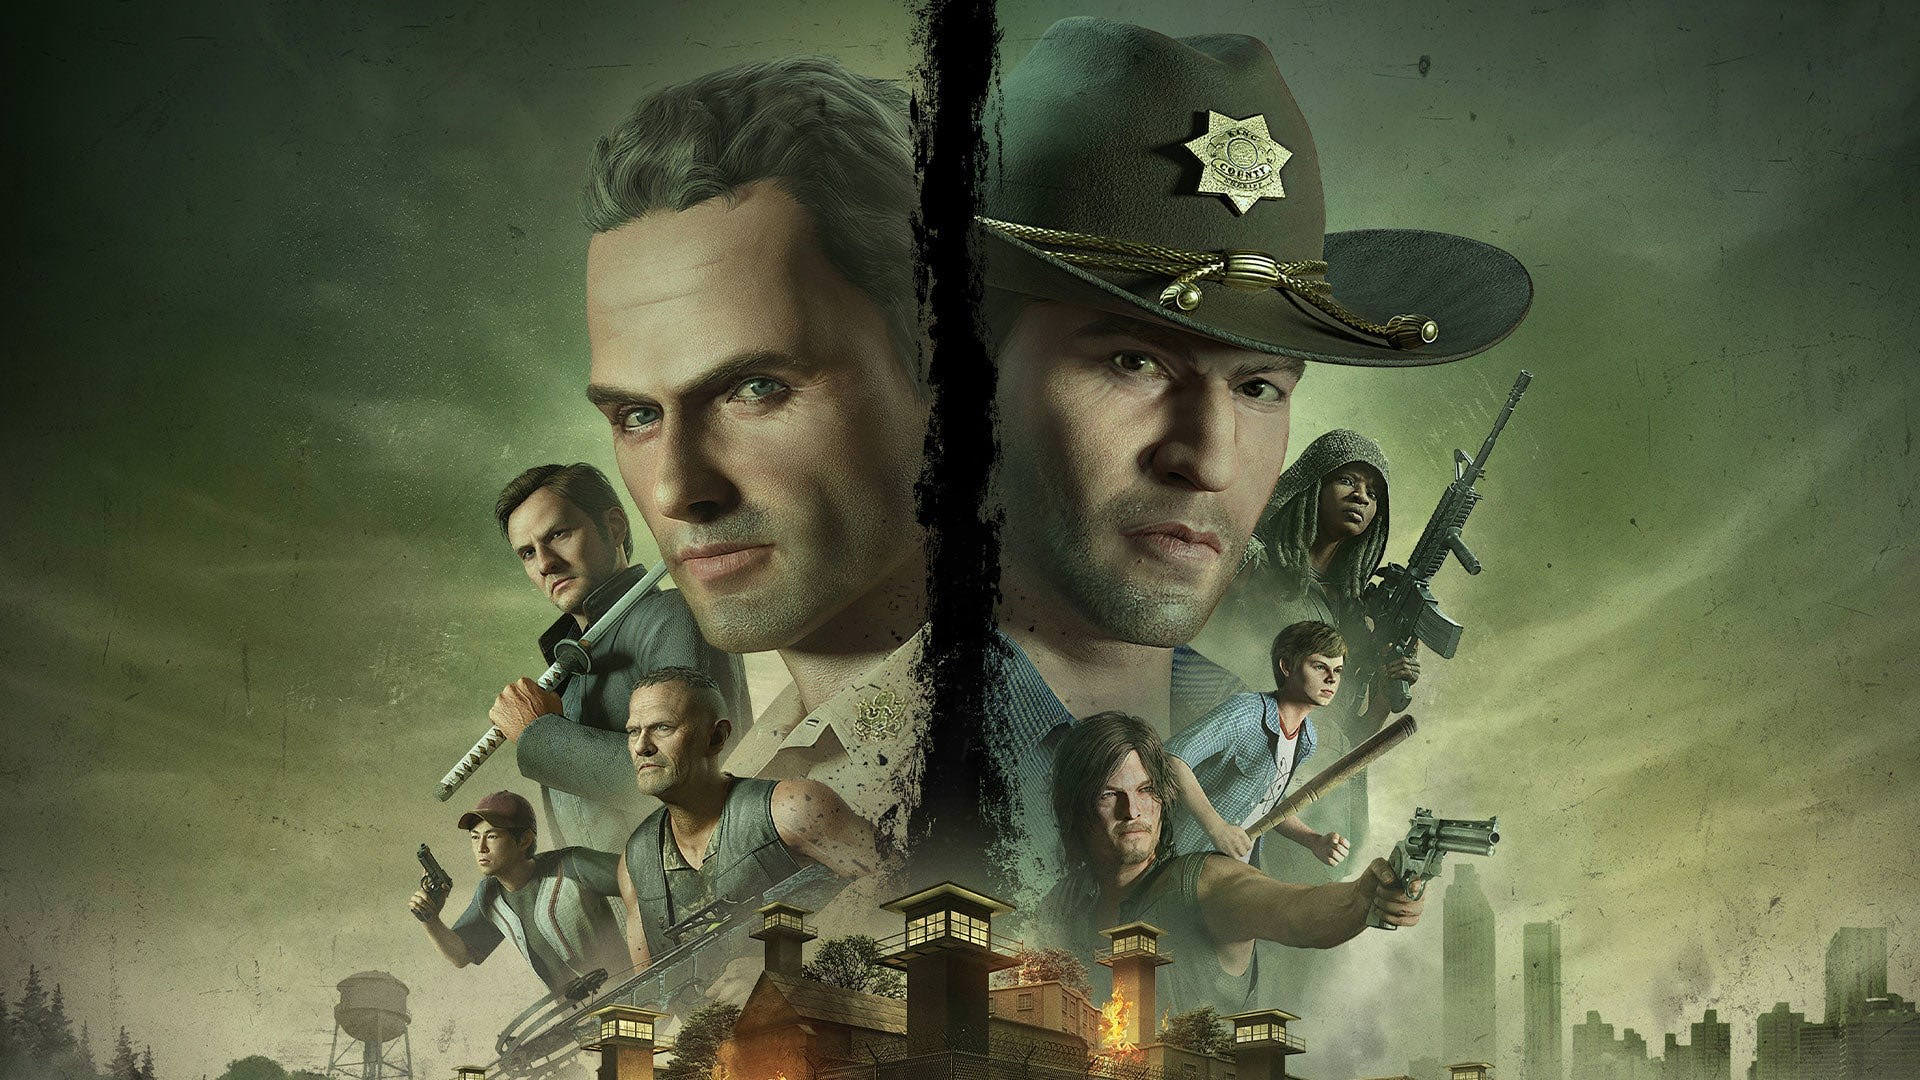 تریلر رونمایی از بازی The Walking Dead: Destinies با حضور ریک گرایمز و دریل دیکسون